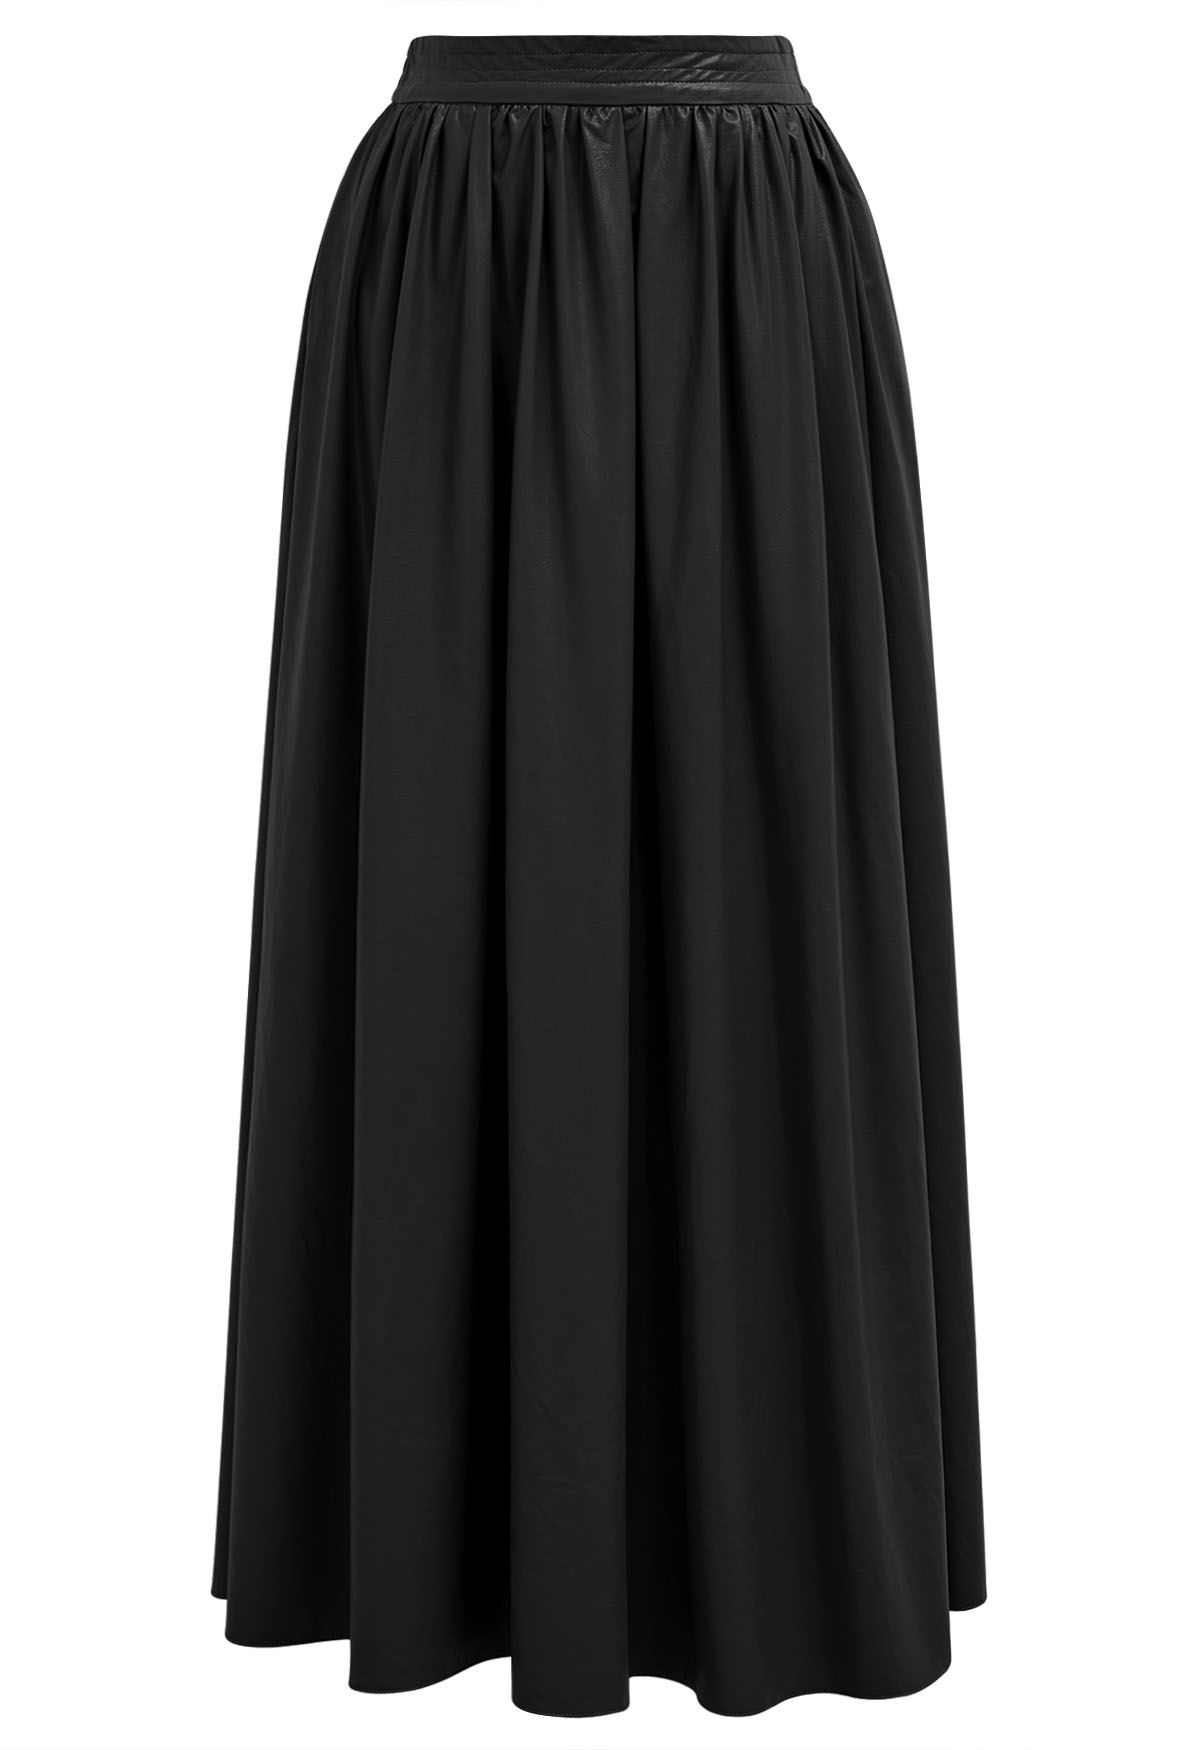 Falda larga de cuero sintético en negro de Refined Simplicity